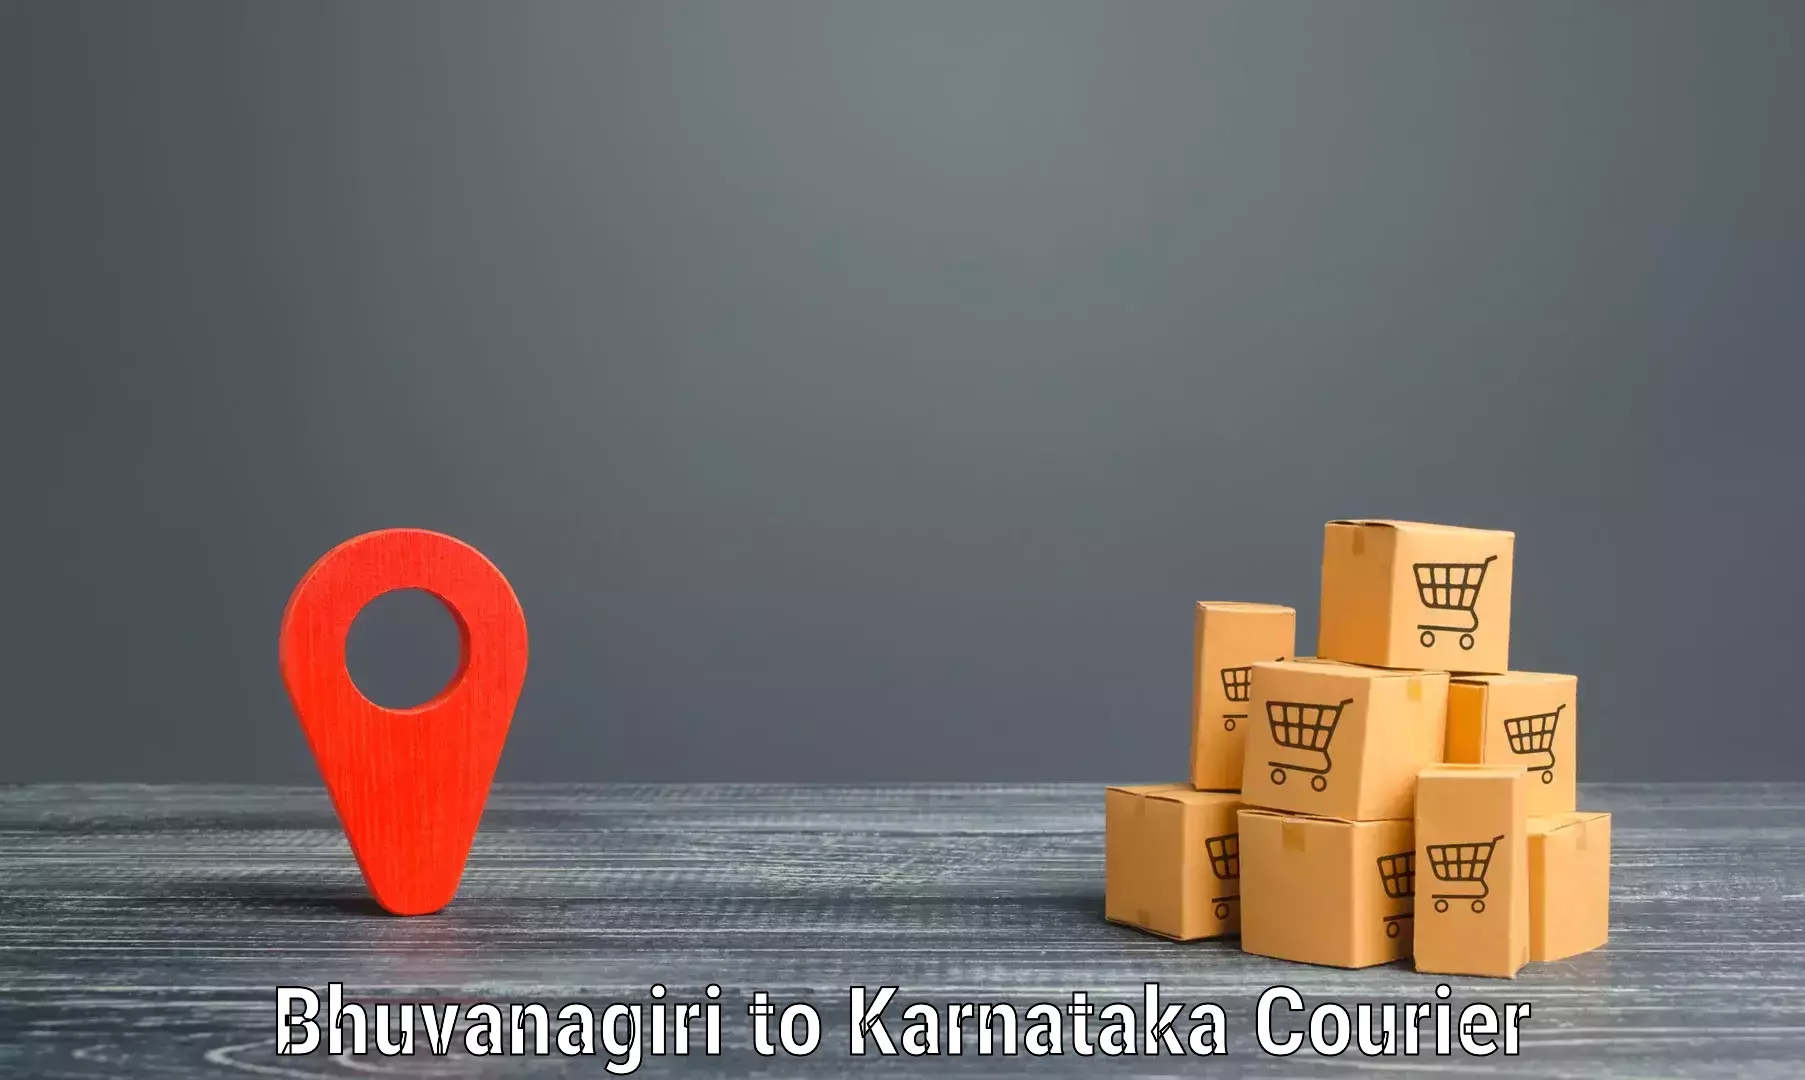 Nationwide parcel services Bhuvanagiri to Chikkanayakanahalli